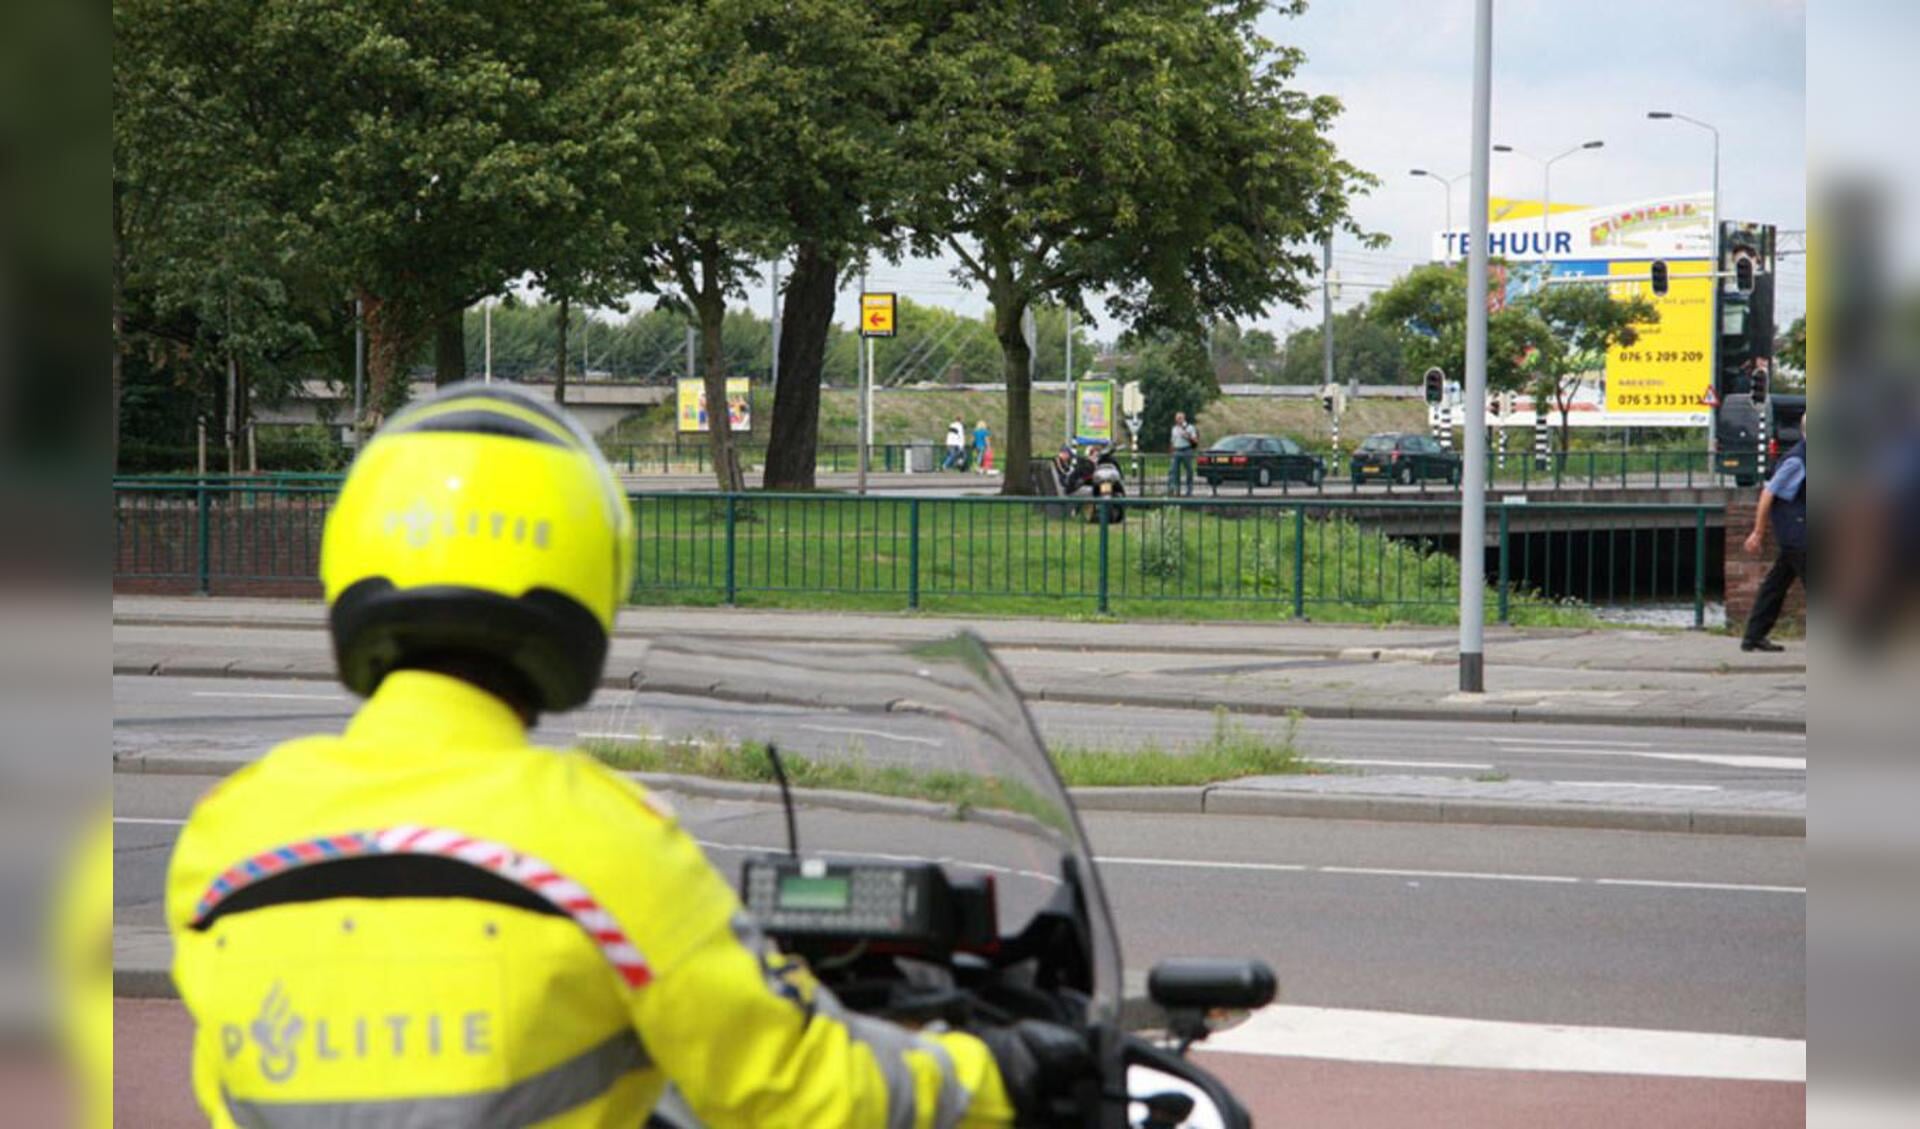 http://www.bredavandaag.nl/nieuws/2010-08-04/urinerende-daklozen-groenstrookje-gasbrug-aangepakt